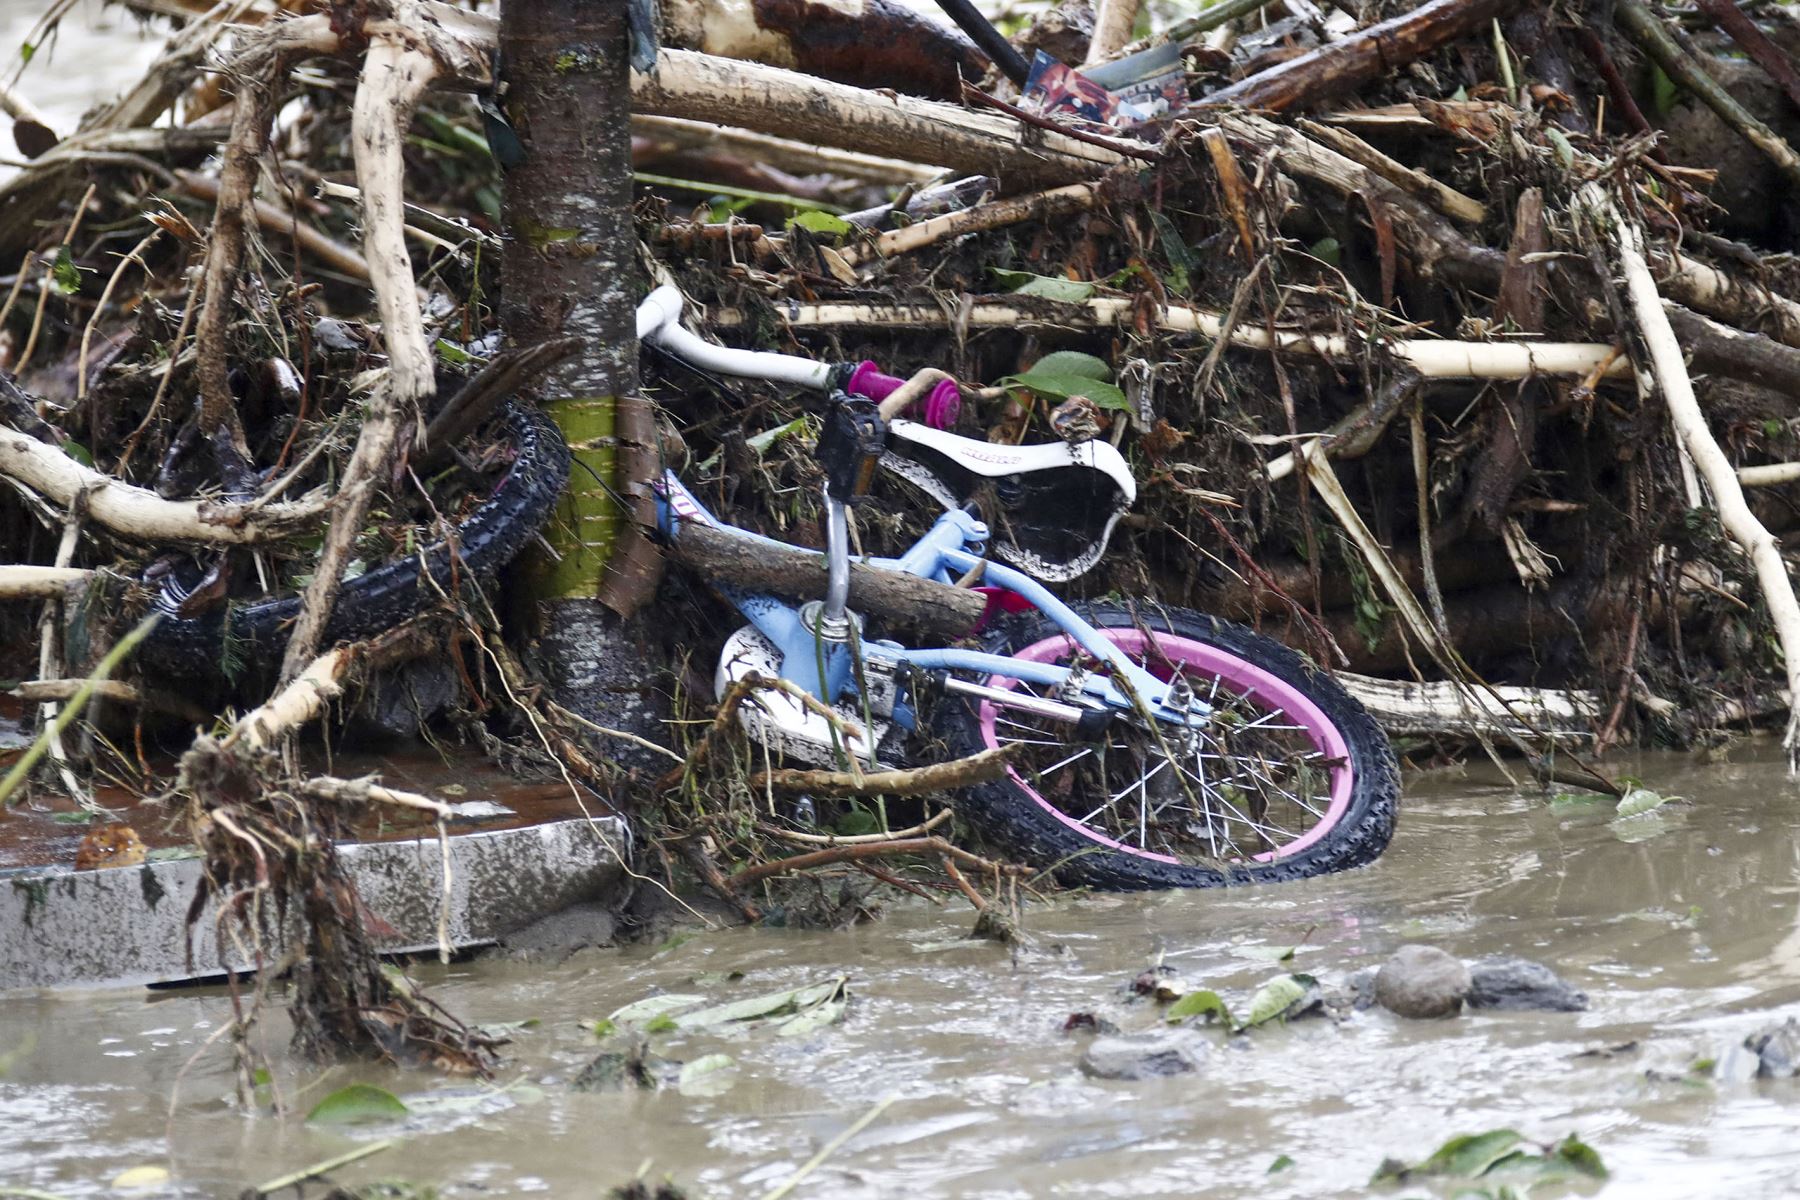 Se ve una bicicleta en medio de la madera arrastrada por los deslizamientos de tierra después de las fuertes lluvias en Treffen, en el distrito de Villach-Land del estado de Carintia, Austria. Foto: AFP